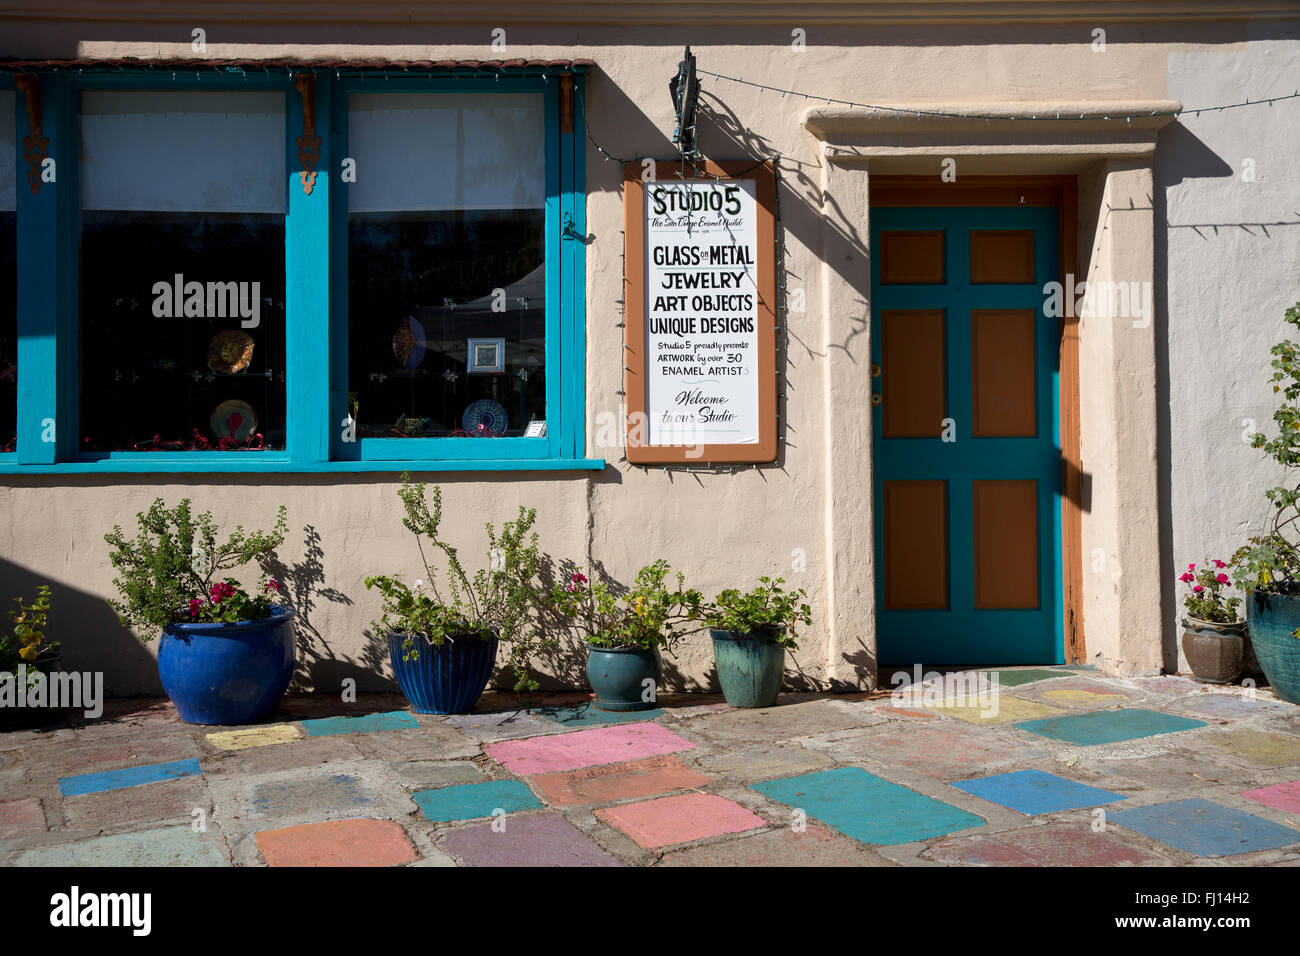 Spanische Kunst Dorfzentrum, Balboa Park, San Diego, Kalifornien USA Stockfoto